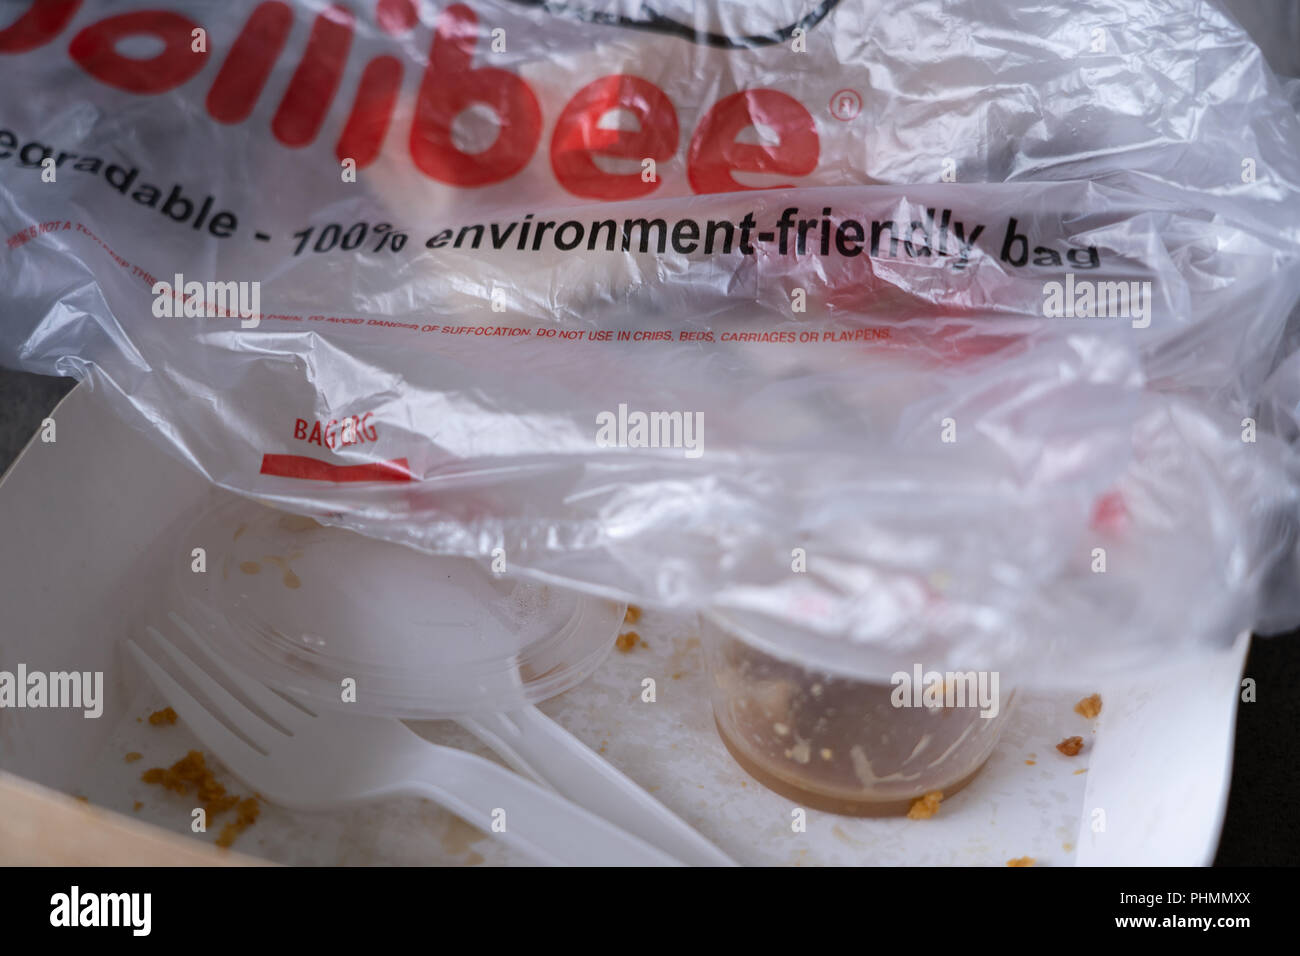 Resti di un fast food da asporto pasto Jollibee dotate di un materiale biodegradabile sacchetto di plastica e altri rifiuti in plastica,Cebu, Filippine. Foto Stock